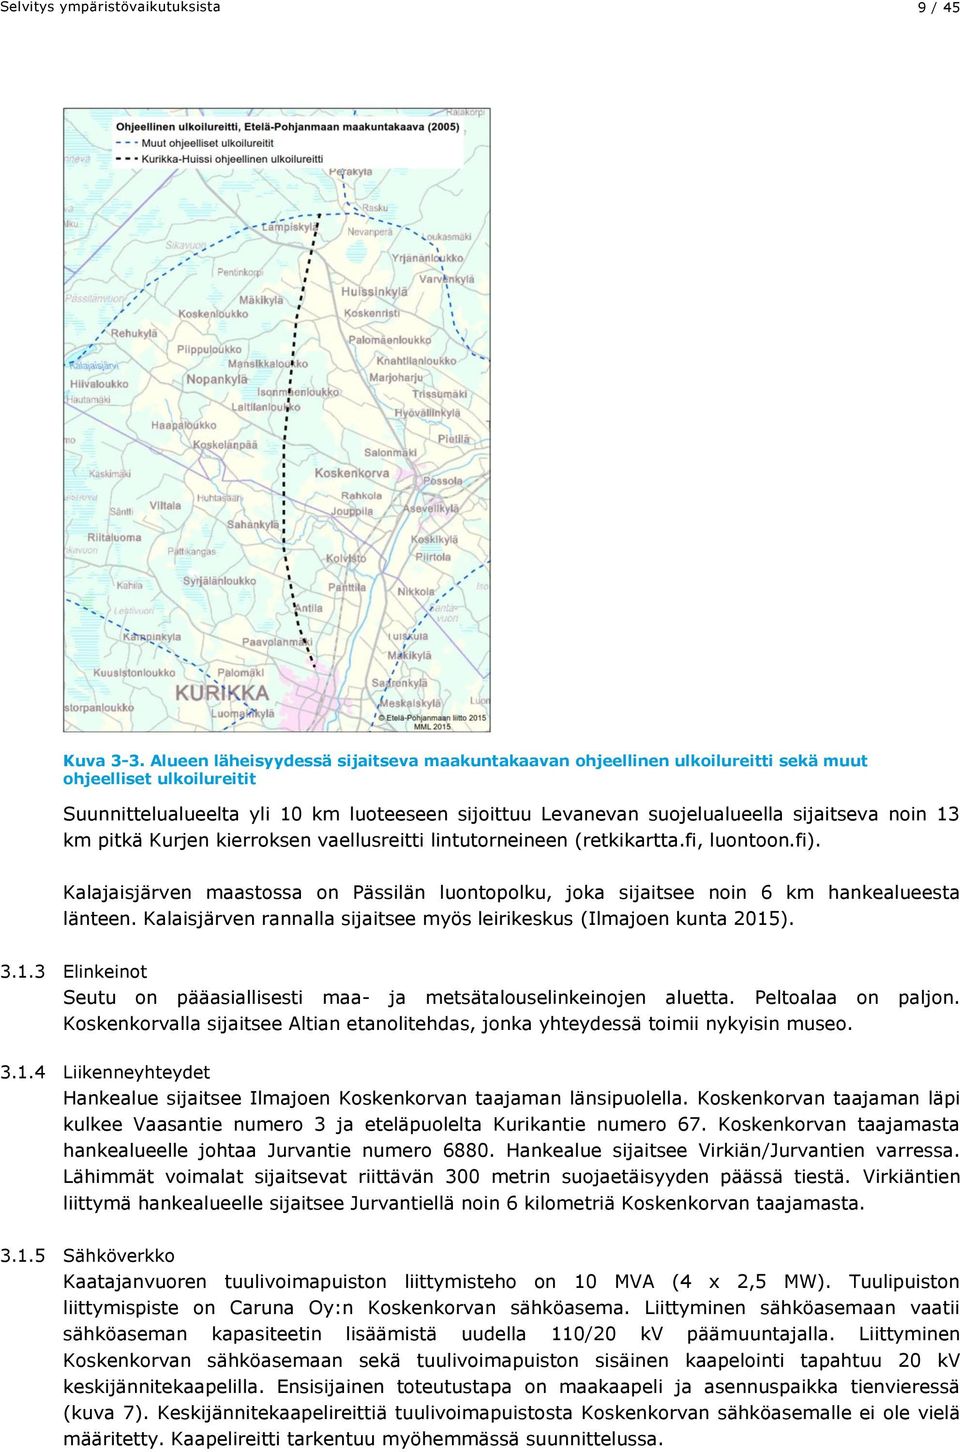 noin 13 km pitkä Kurjen kierroksen vaellusreitti lintutorneineen (retkikartta.fi, luontoon.fi). Kalajaisjärven maastossa on Pässilän luontopolku, joka sijaitsee noin 6 km hankealueesta länteen.